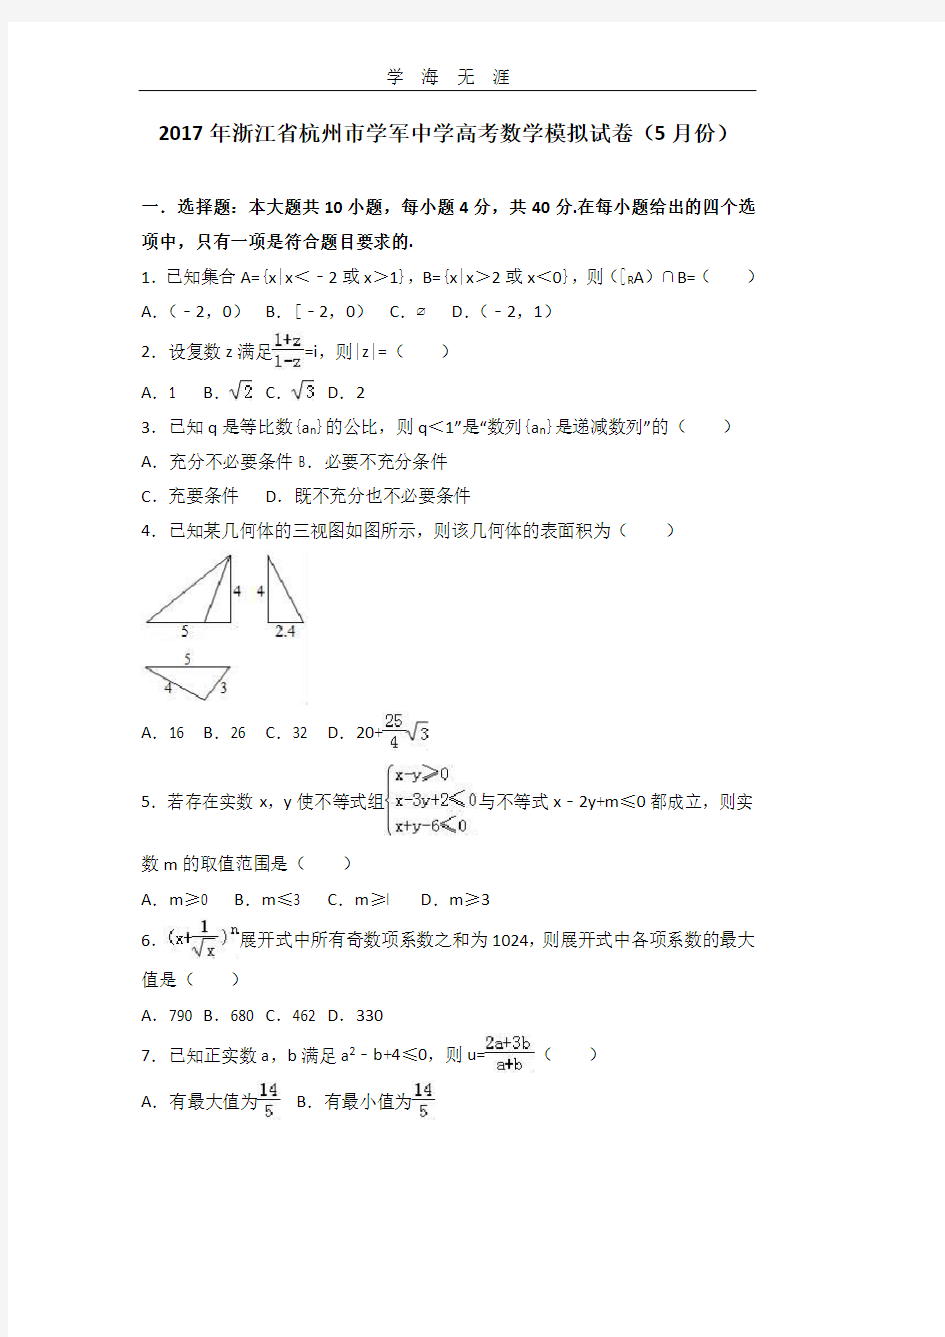 浙江省杭州市学军中学高考数学模拟试卷(份).pdf